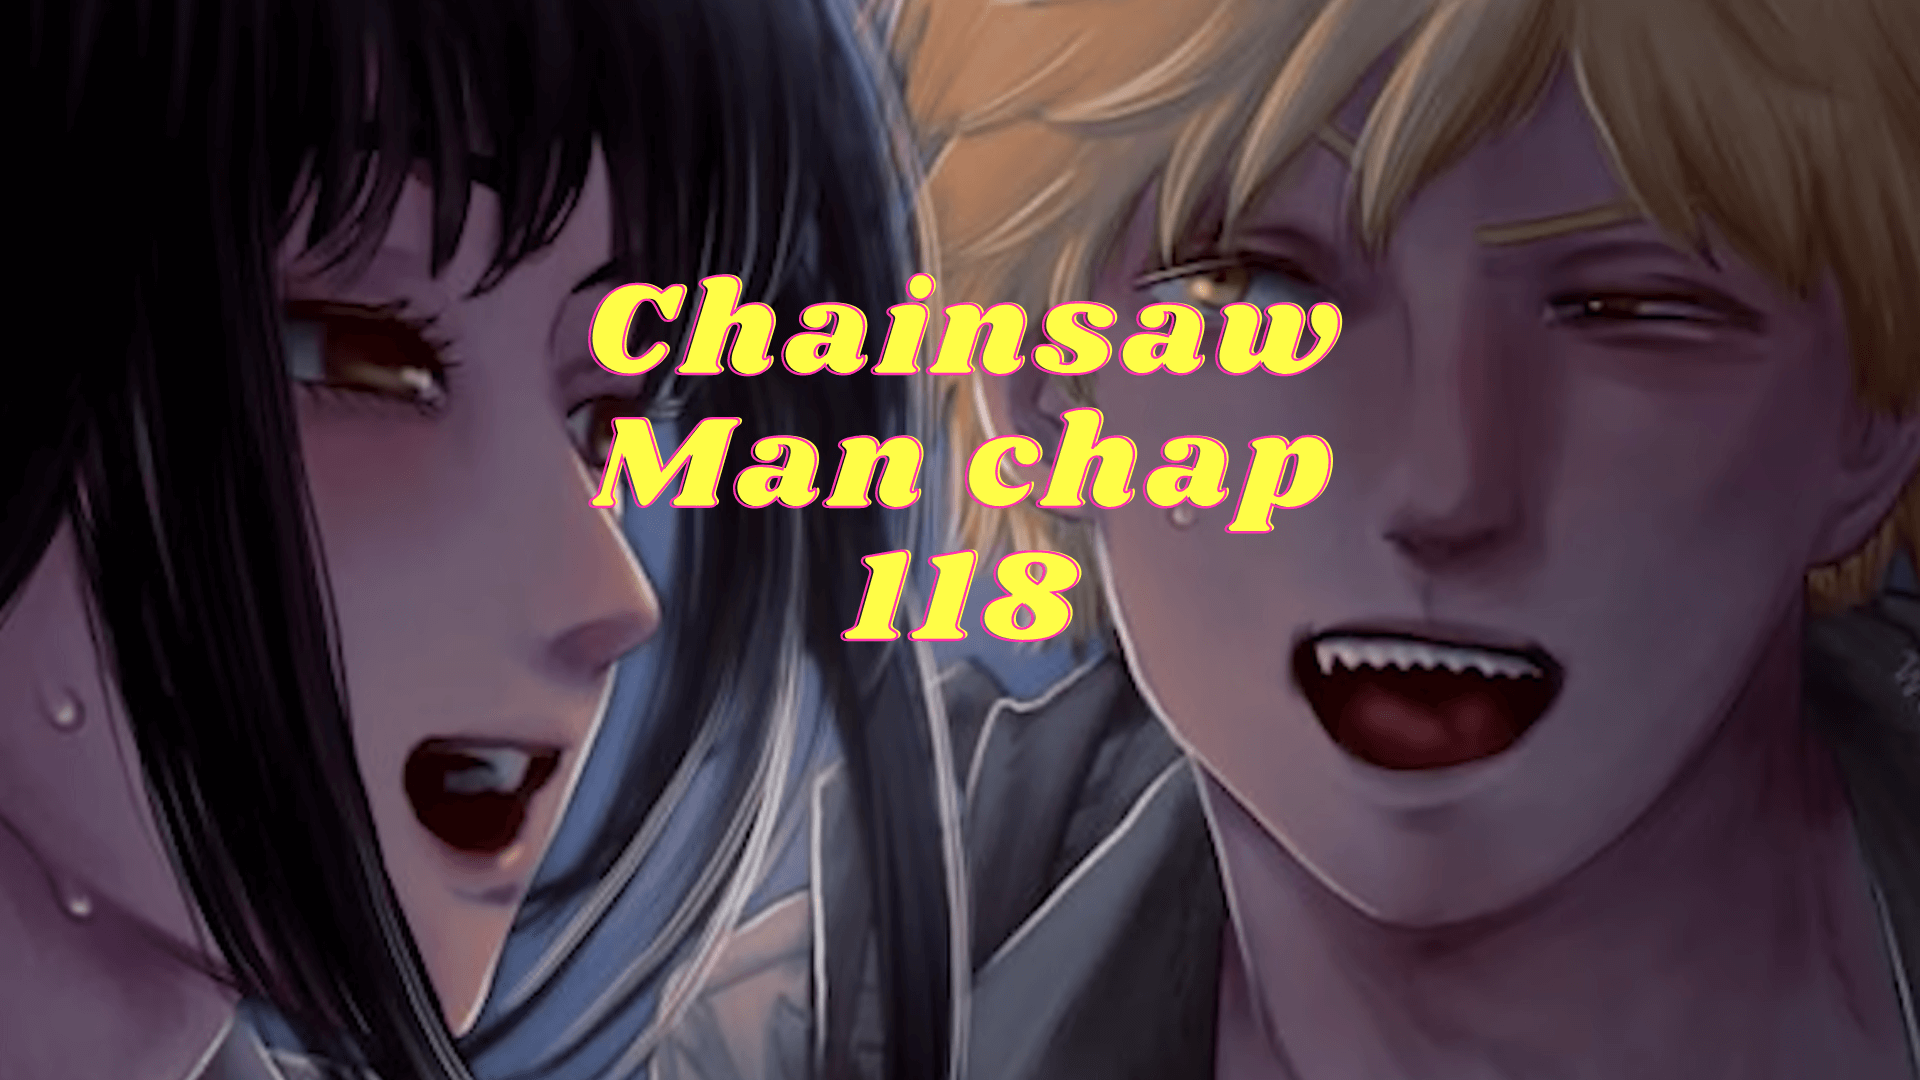 Chainsaw Man chap 118